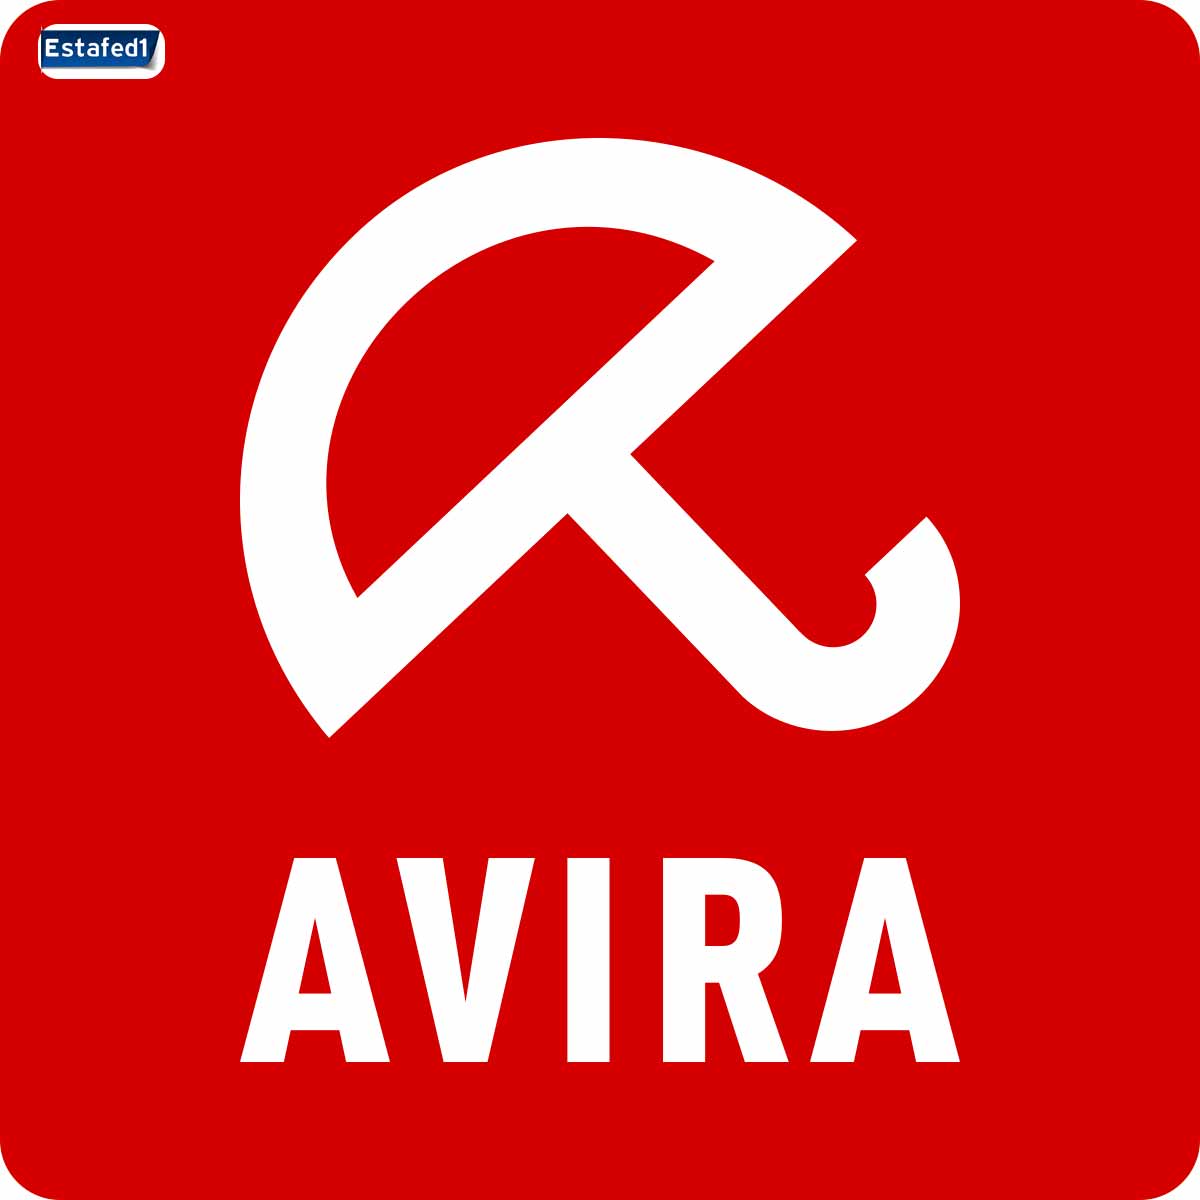 Avira أفضل برنامج حماية من الفيروسات مجانا ويندوز 7